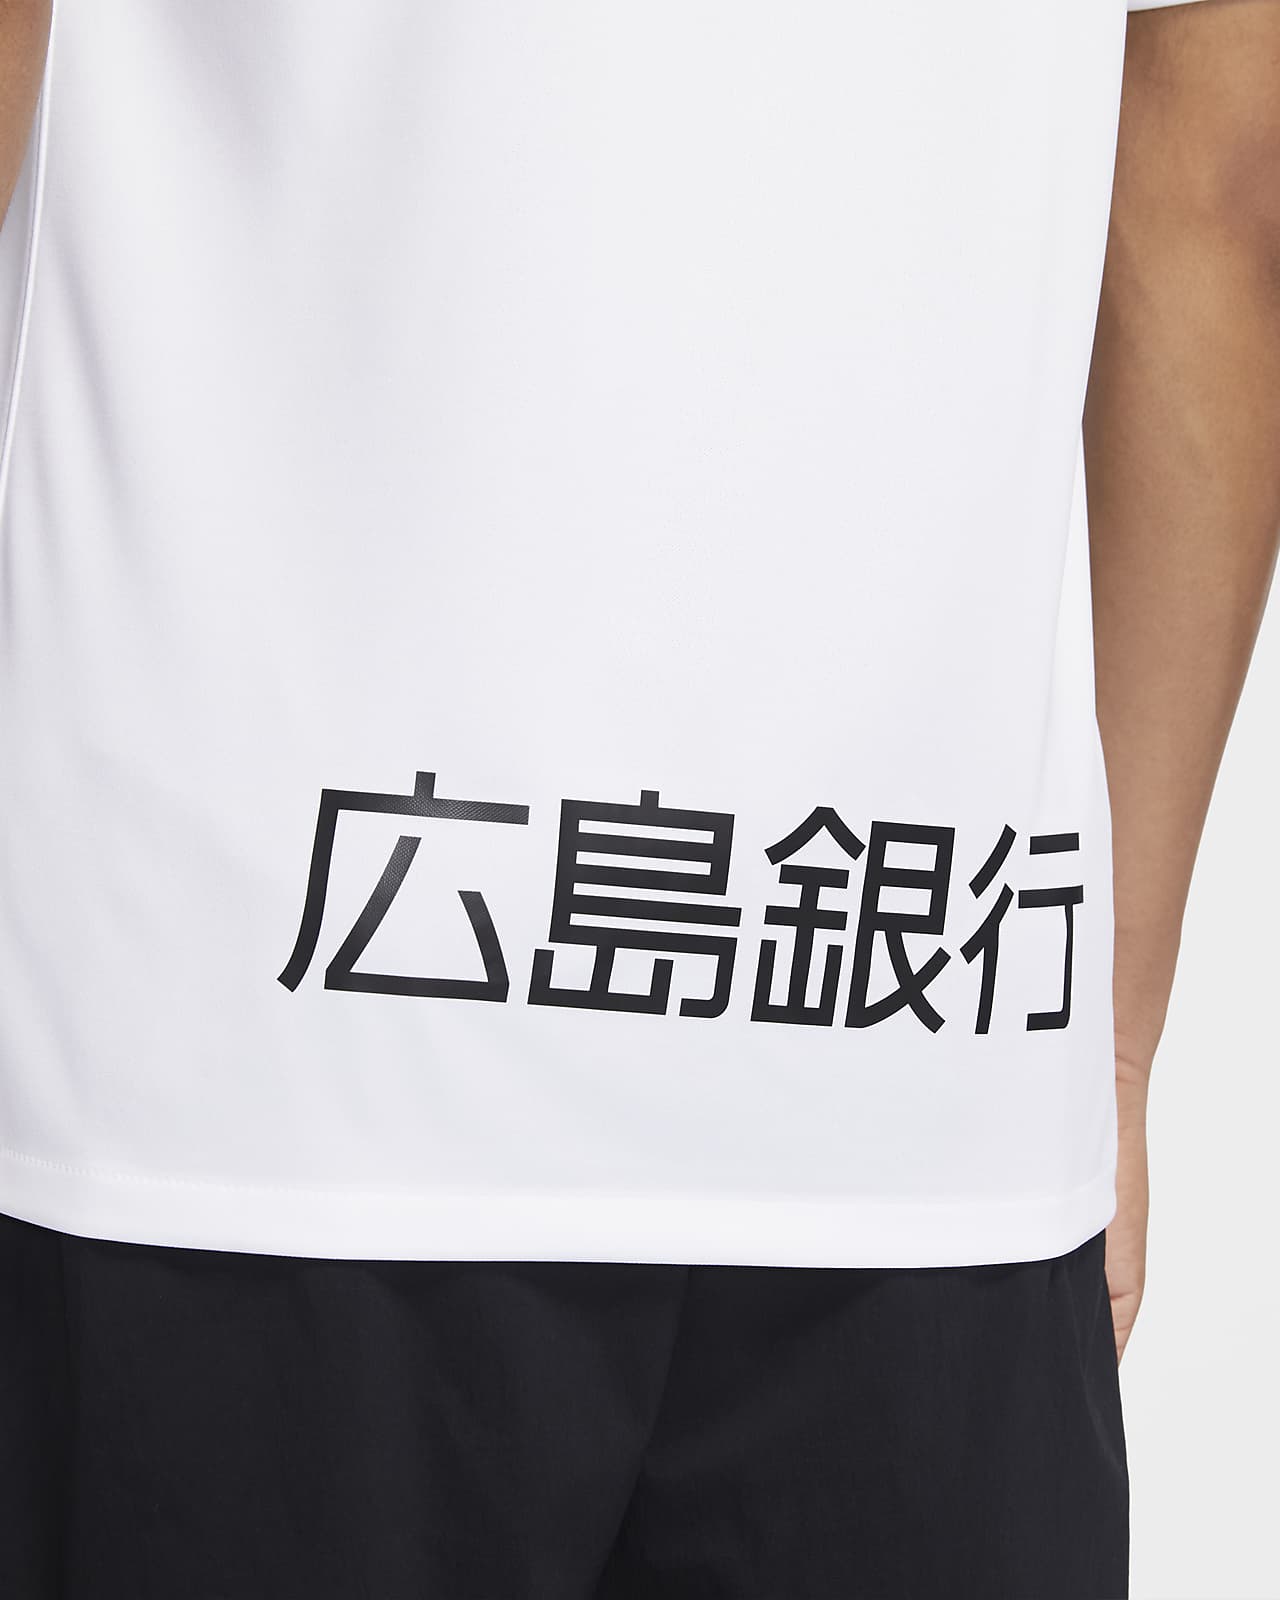 Nike公式 Hiroshima スタジアム アウェイ メンズ サッカーユニフォーム オンラインストア 通販サイト